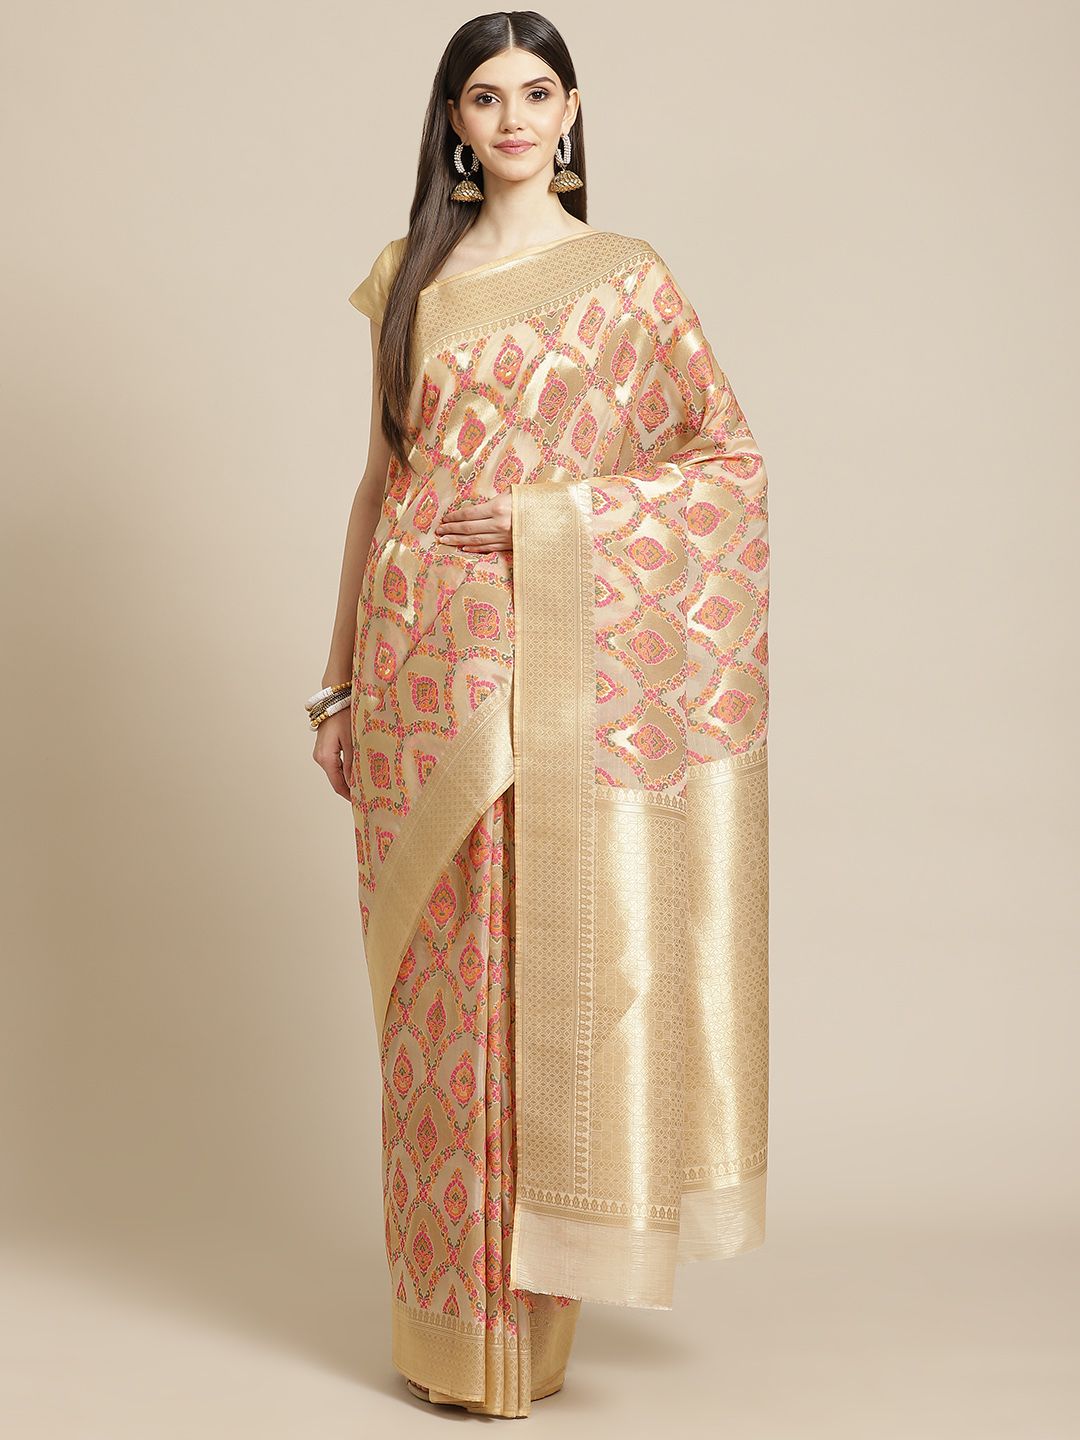 Meena Bazaar Beige & Pink Woven Design Saree with Blouse Price in India